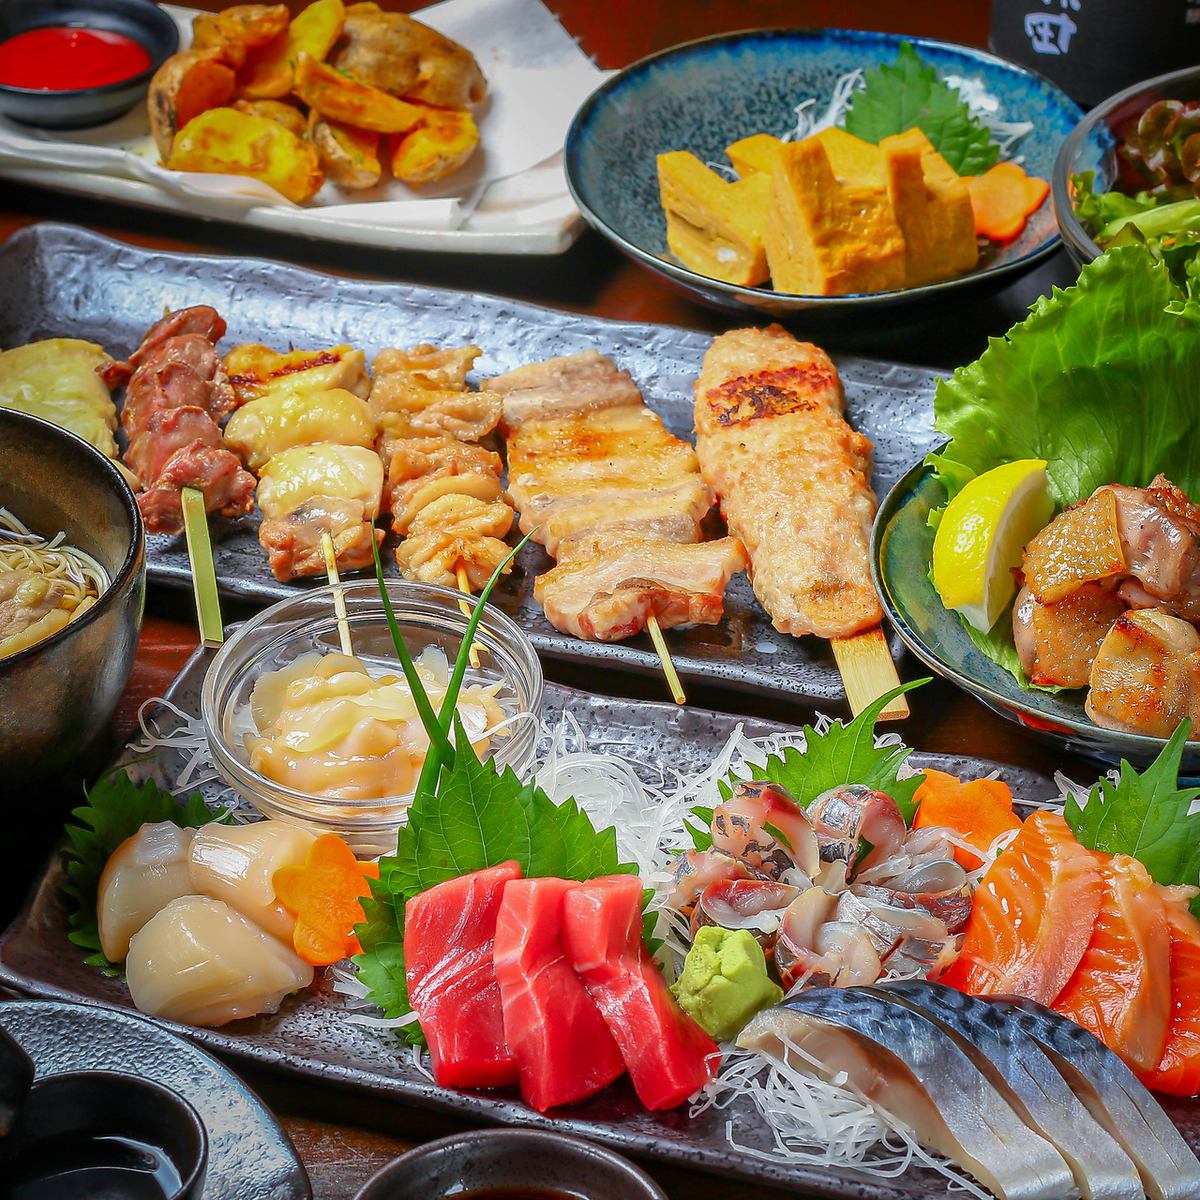 미나미 히라기시 역에서 도보 1 분! 사진 빛나는 다양한 요리!